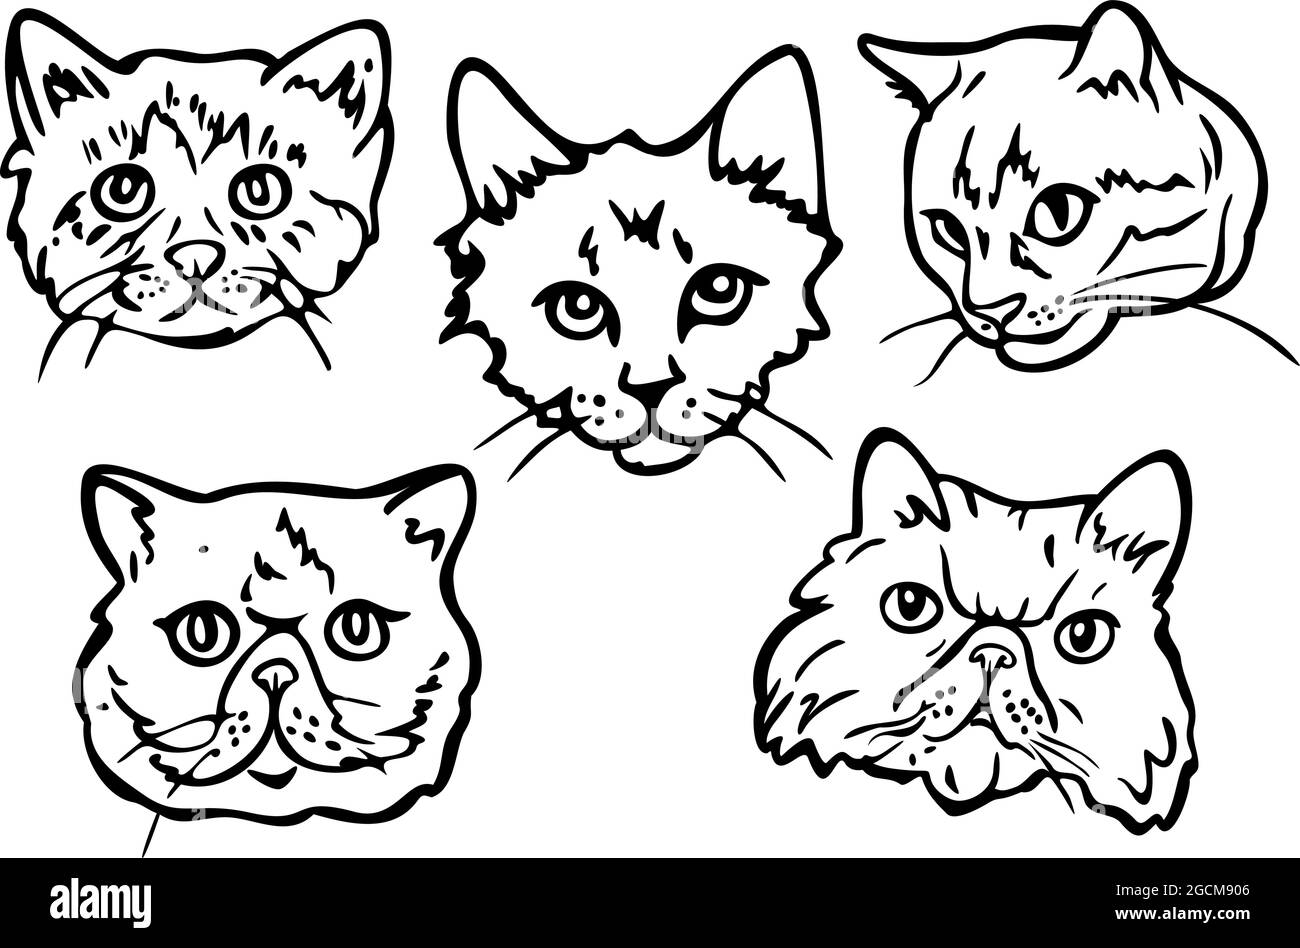 Cute Cat Icon Black Kitten Face Stock Illustration 2251314189